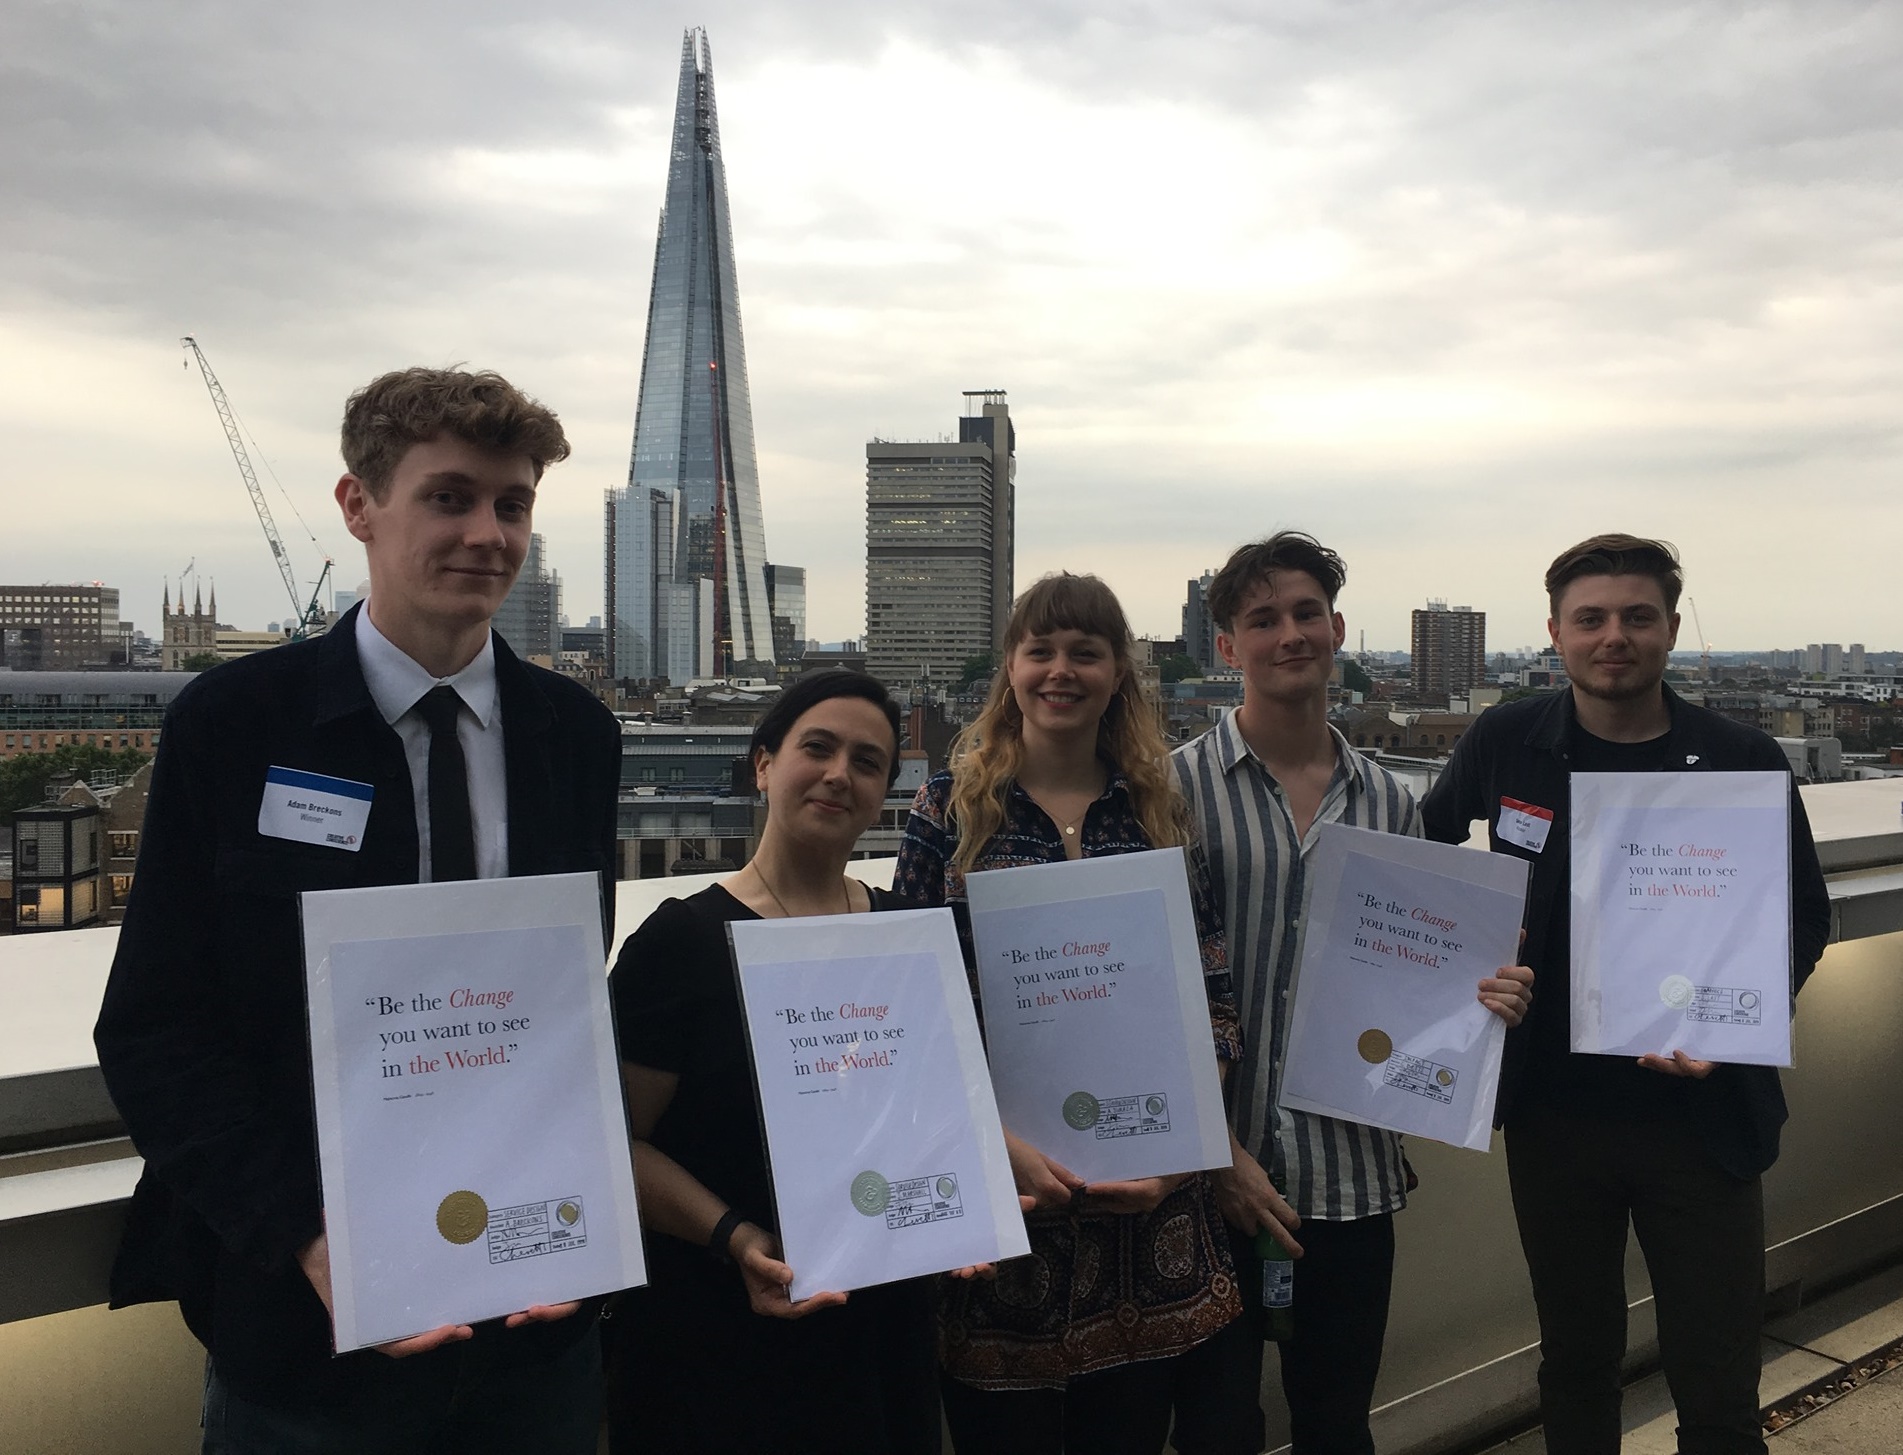 Edinburgh Napier's award winners pose with certificates